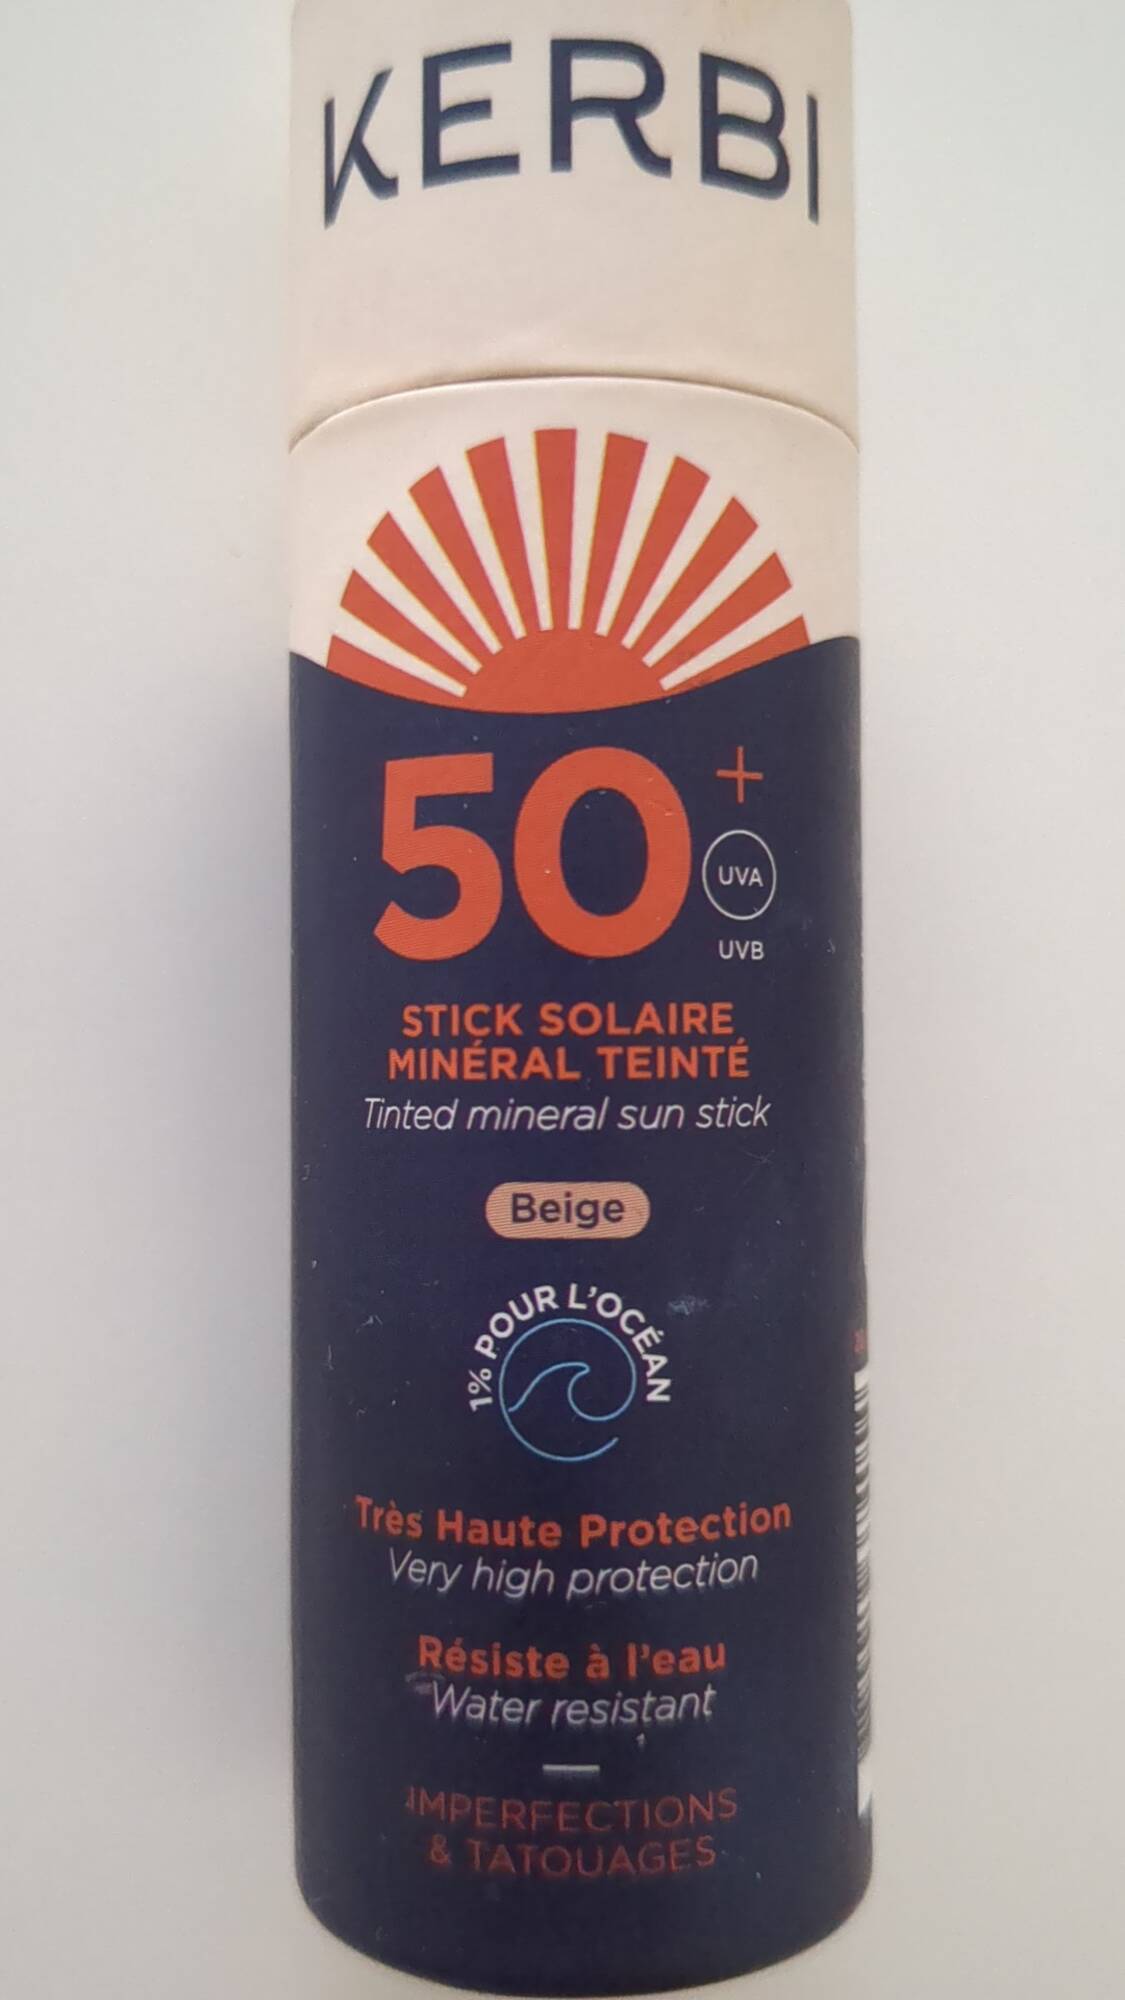 KERBI - Stick solaire minéral teinté beige 50+